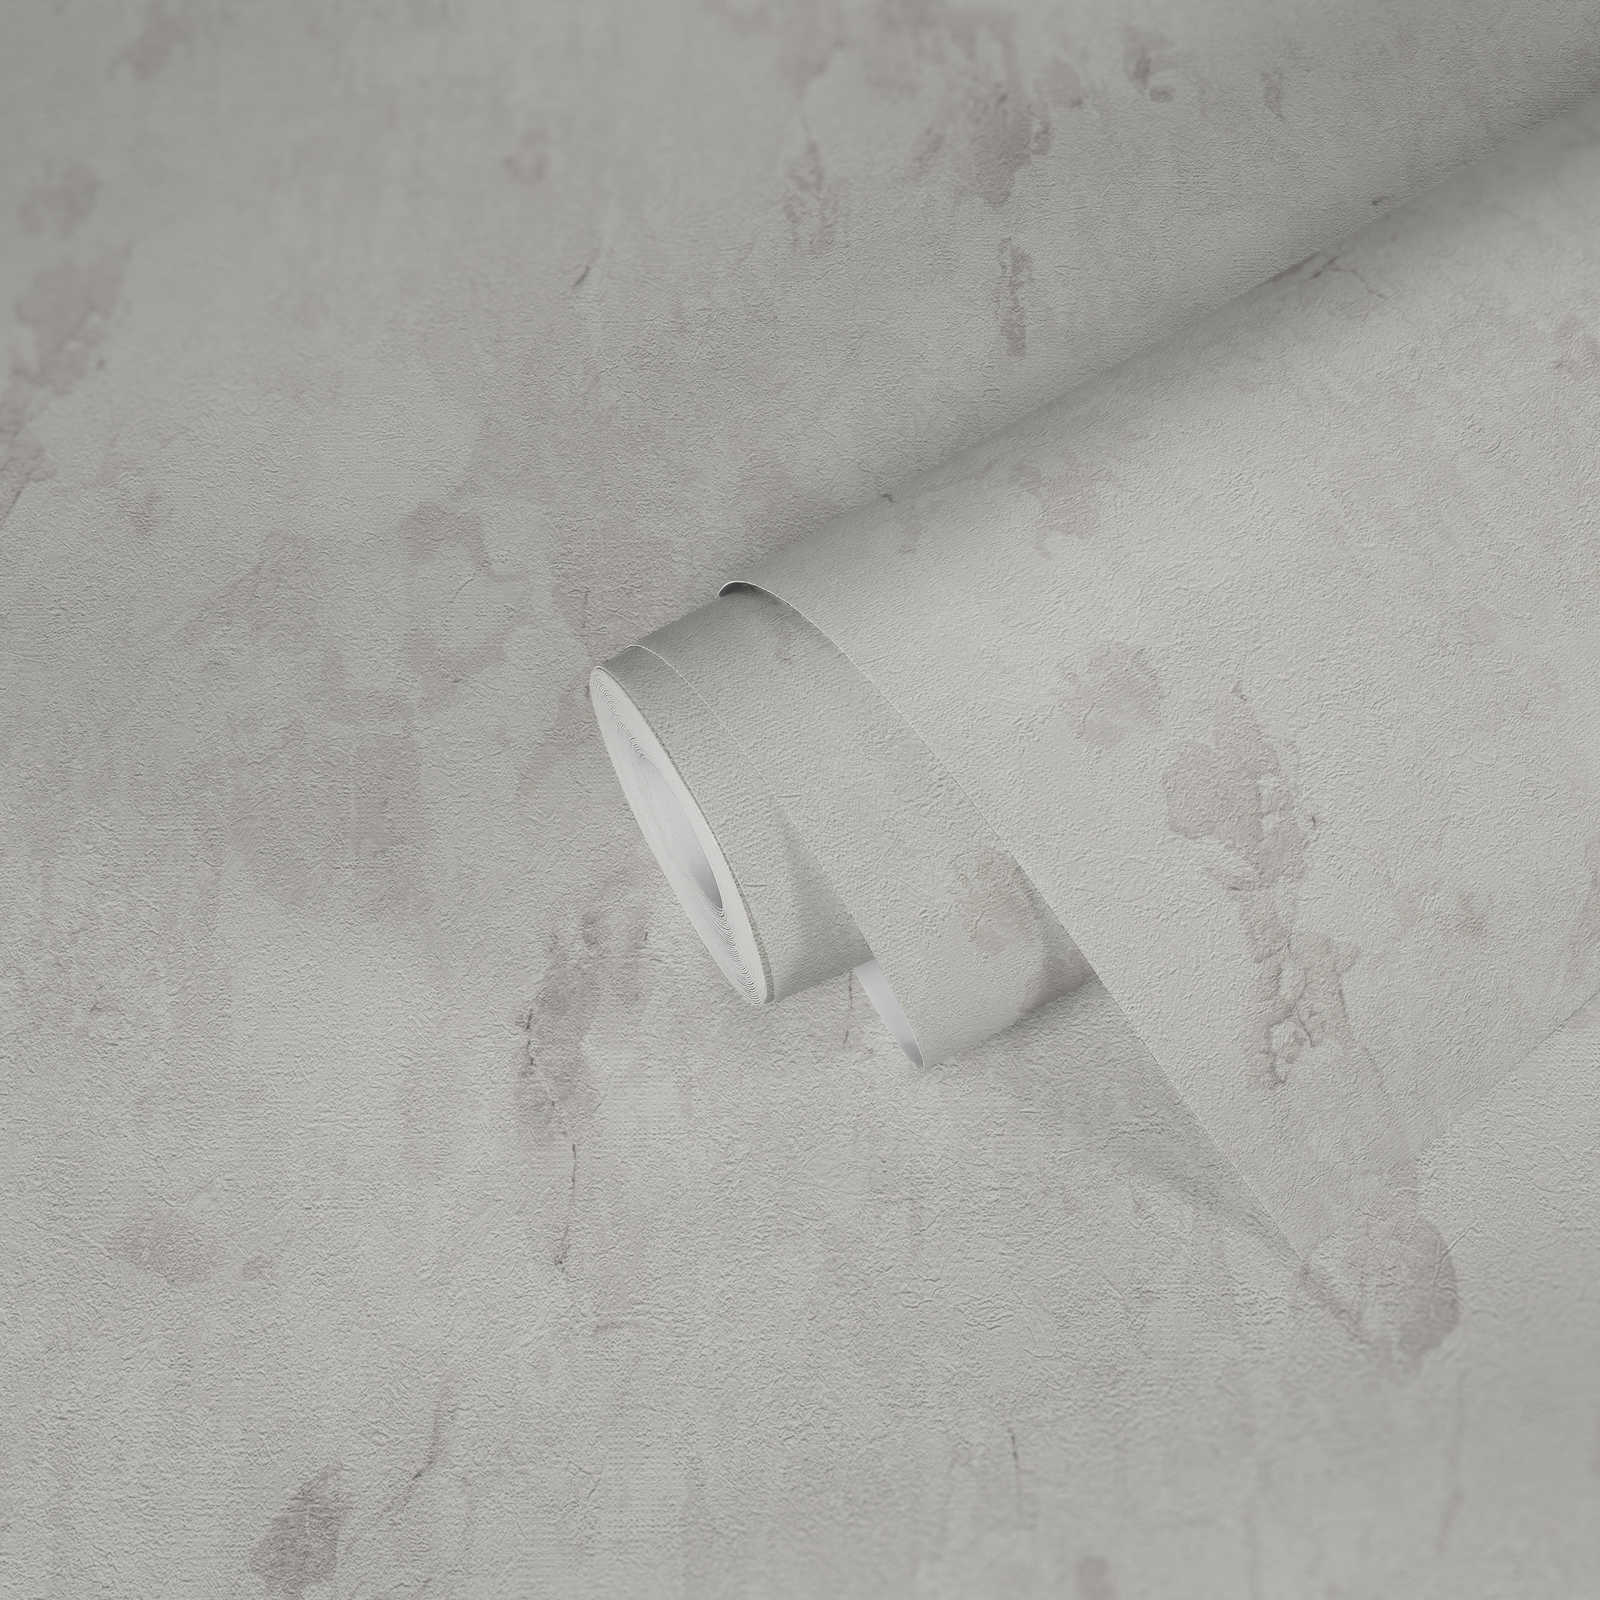             Papier peint intissé au design rustique dans un look usé - crème, gris, blanc
        